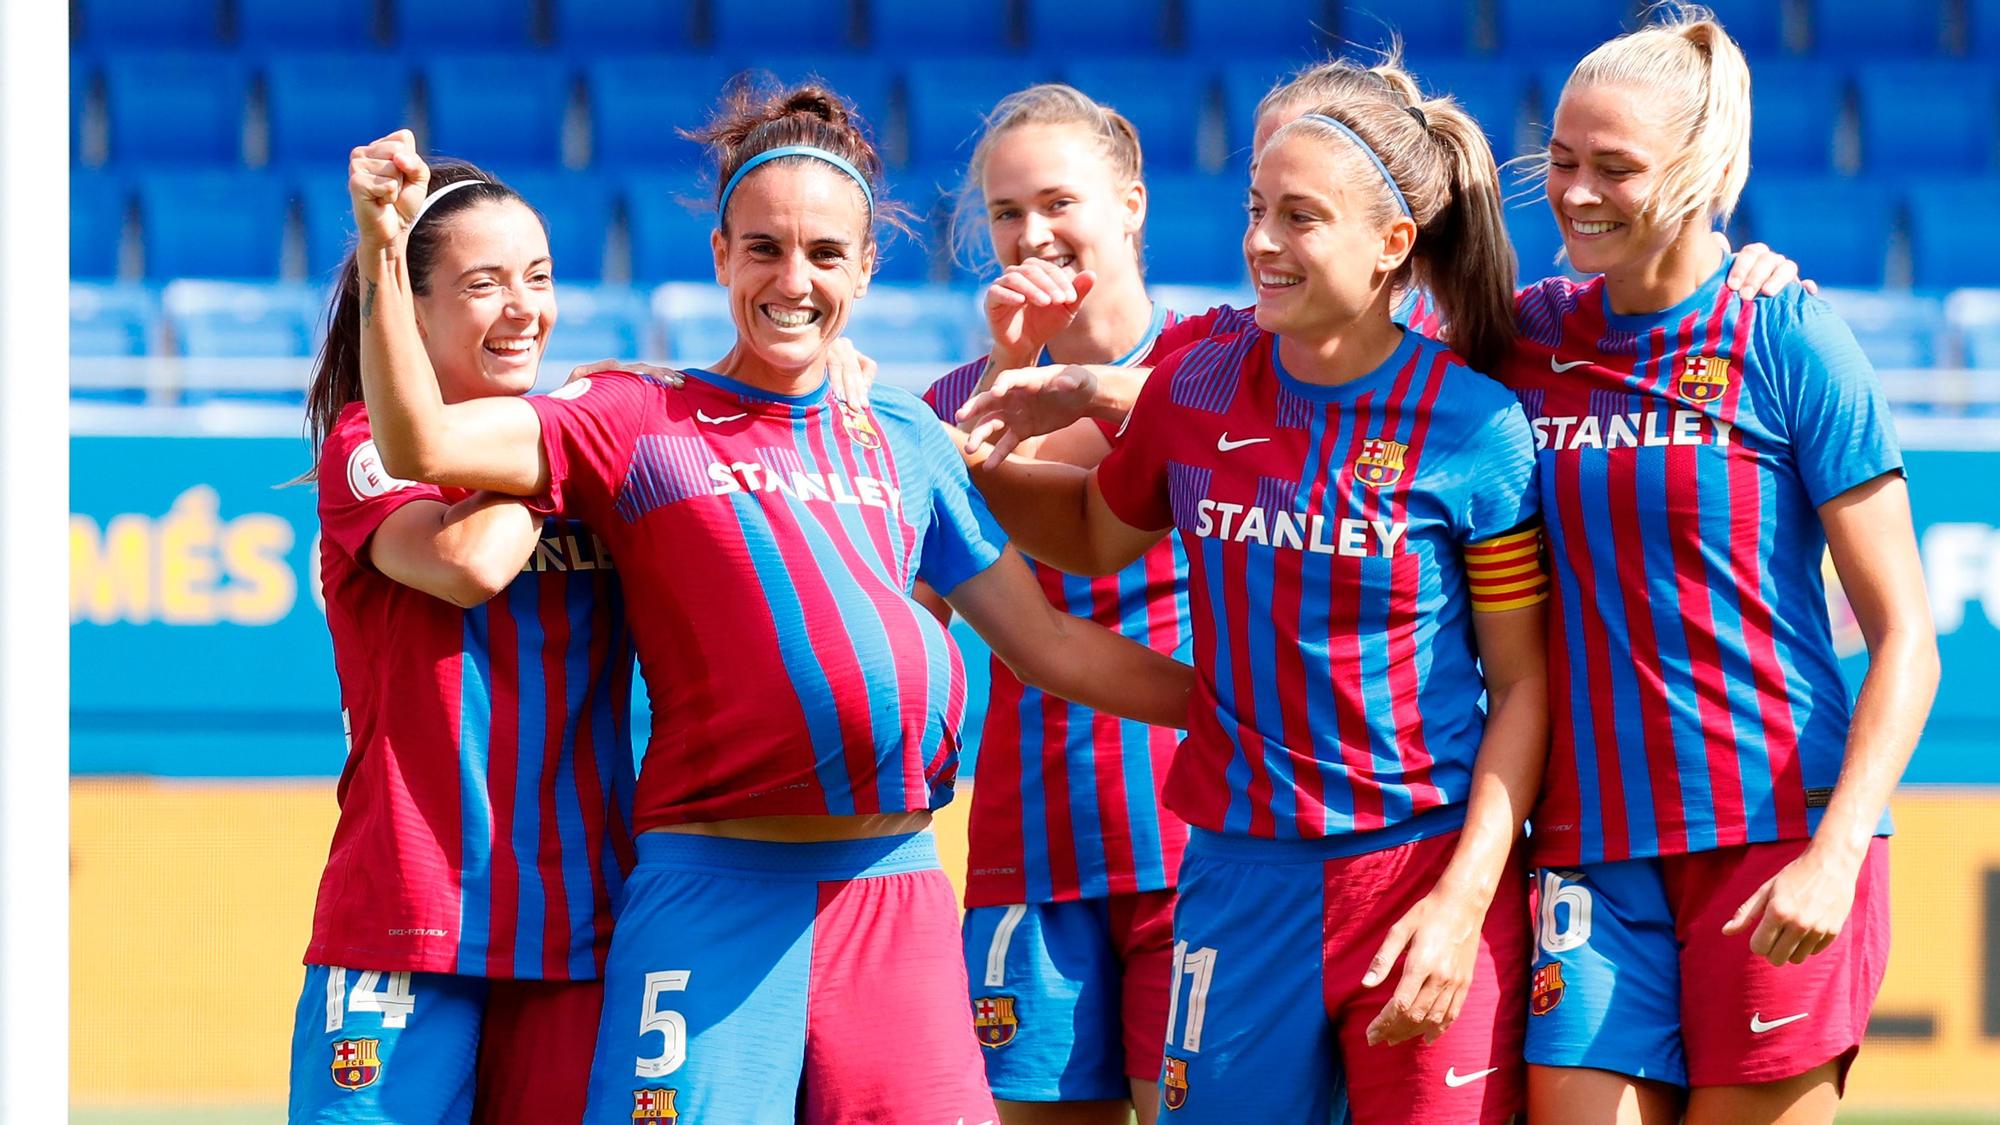 Melanie Serrano dedicando un gol a su mujer e hijas